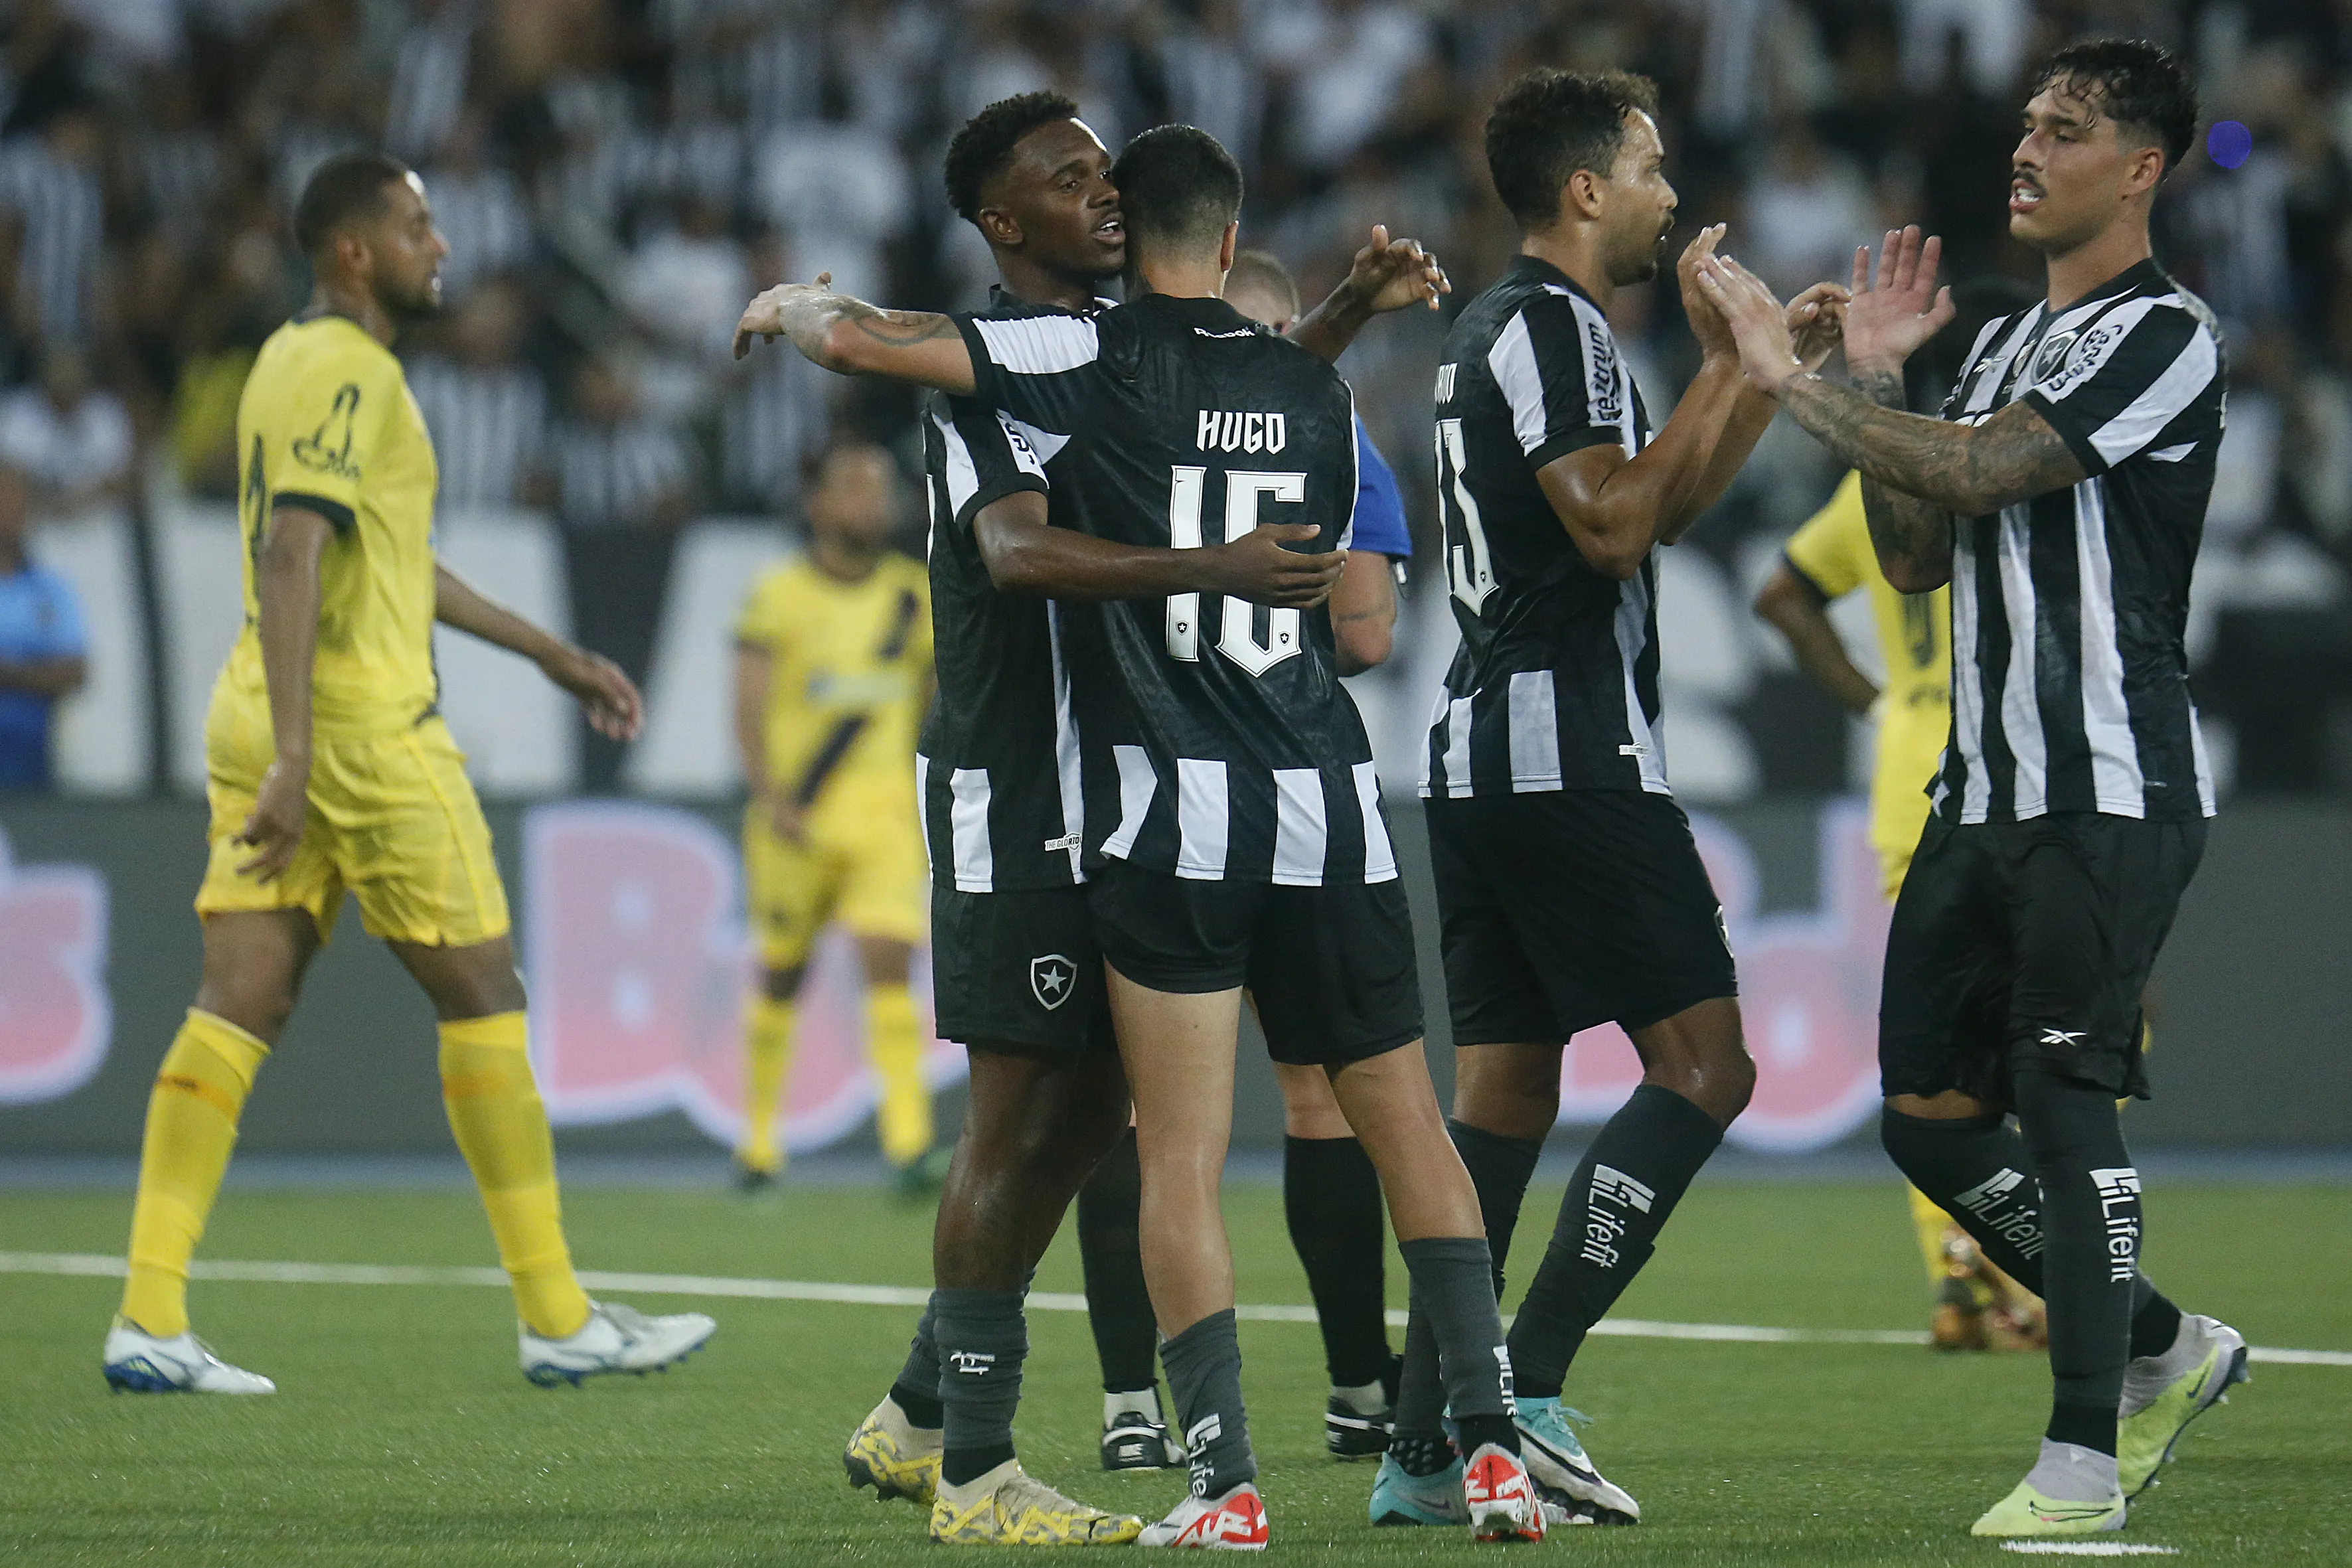 Jeffinho, reestreando com a camisa do Botafogo, marcou o gol da vitória